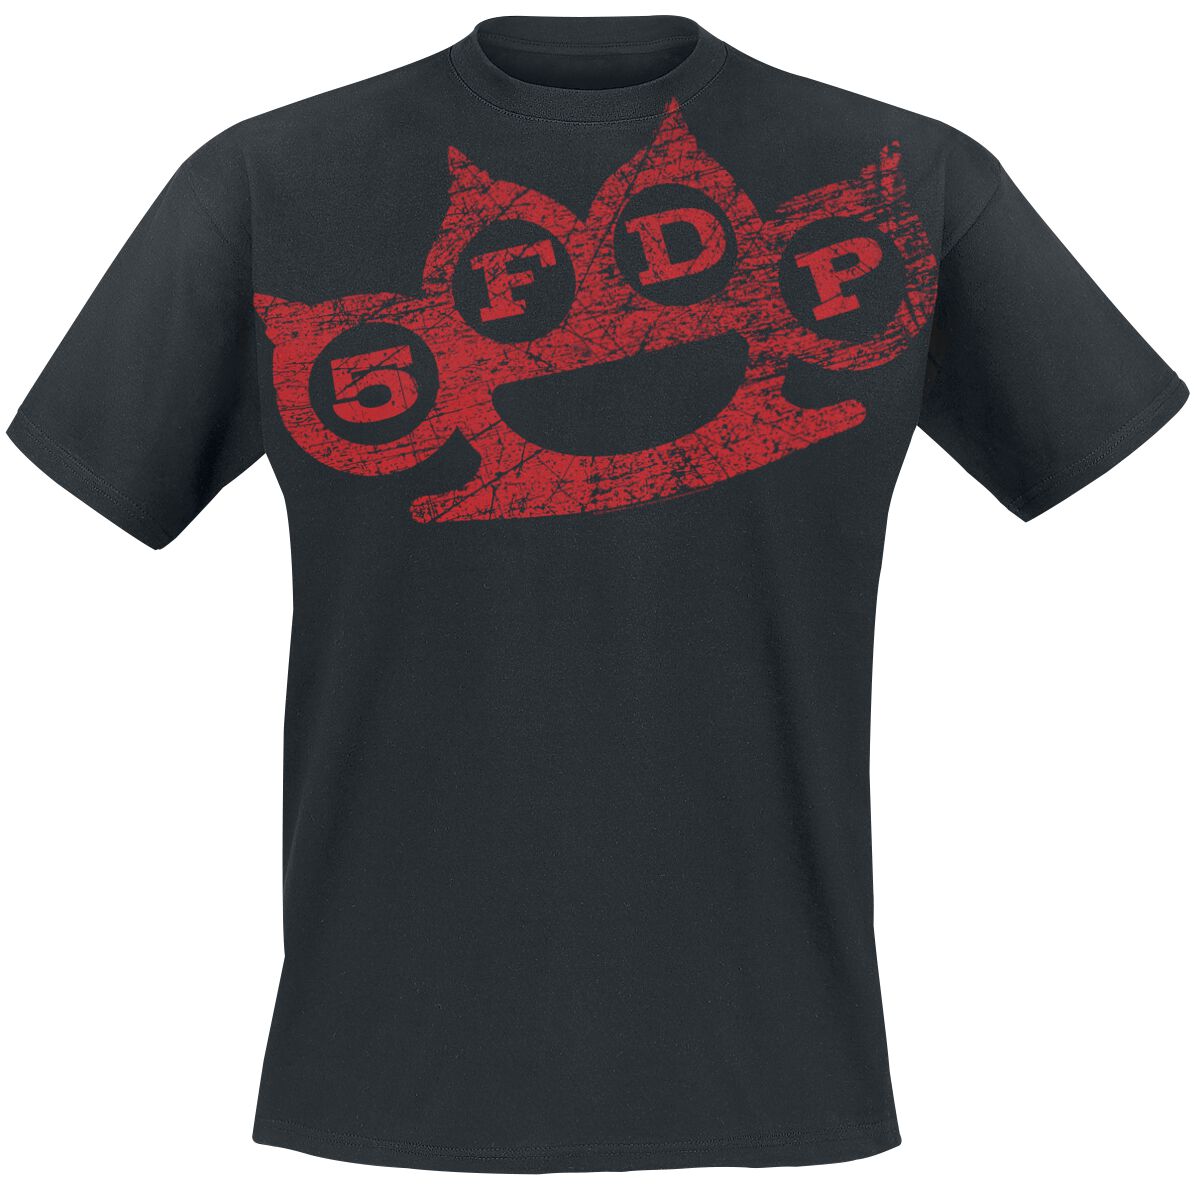 Five Finger Death Punch T-Shirt - Knuckles - S - für Männer - Größe S - schwarz  - Lizenziertes Merchandise!